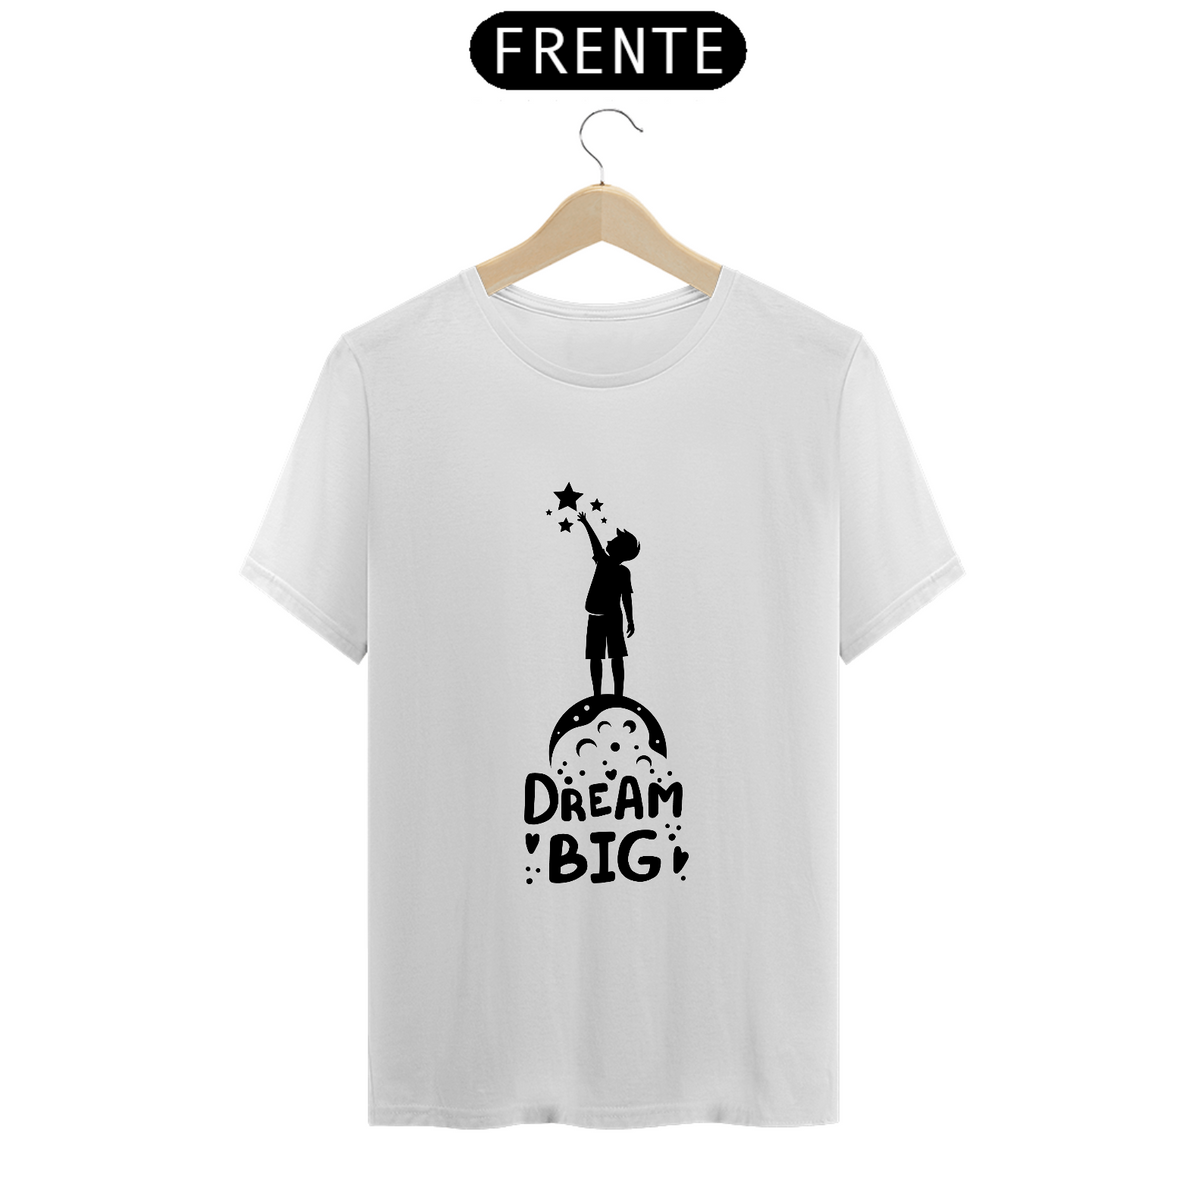 Nome do produto: Camiseta Drean Big